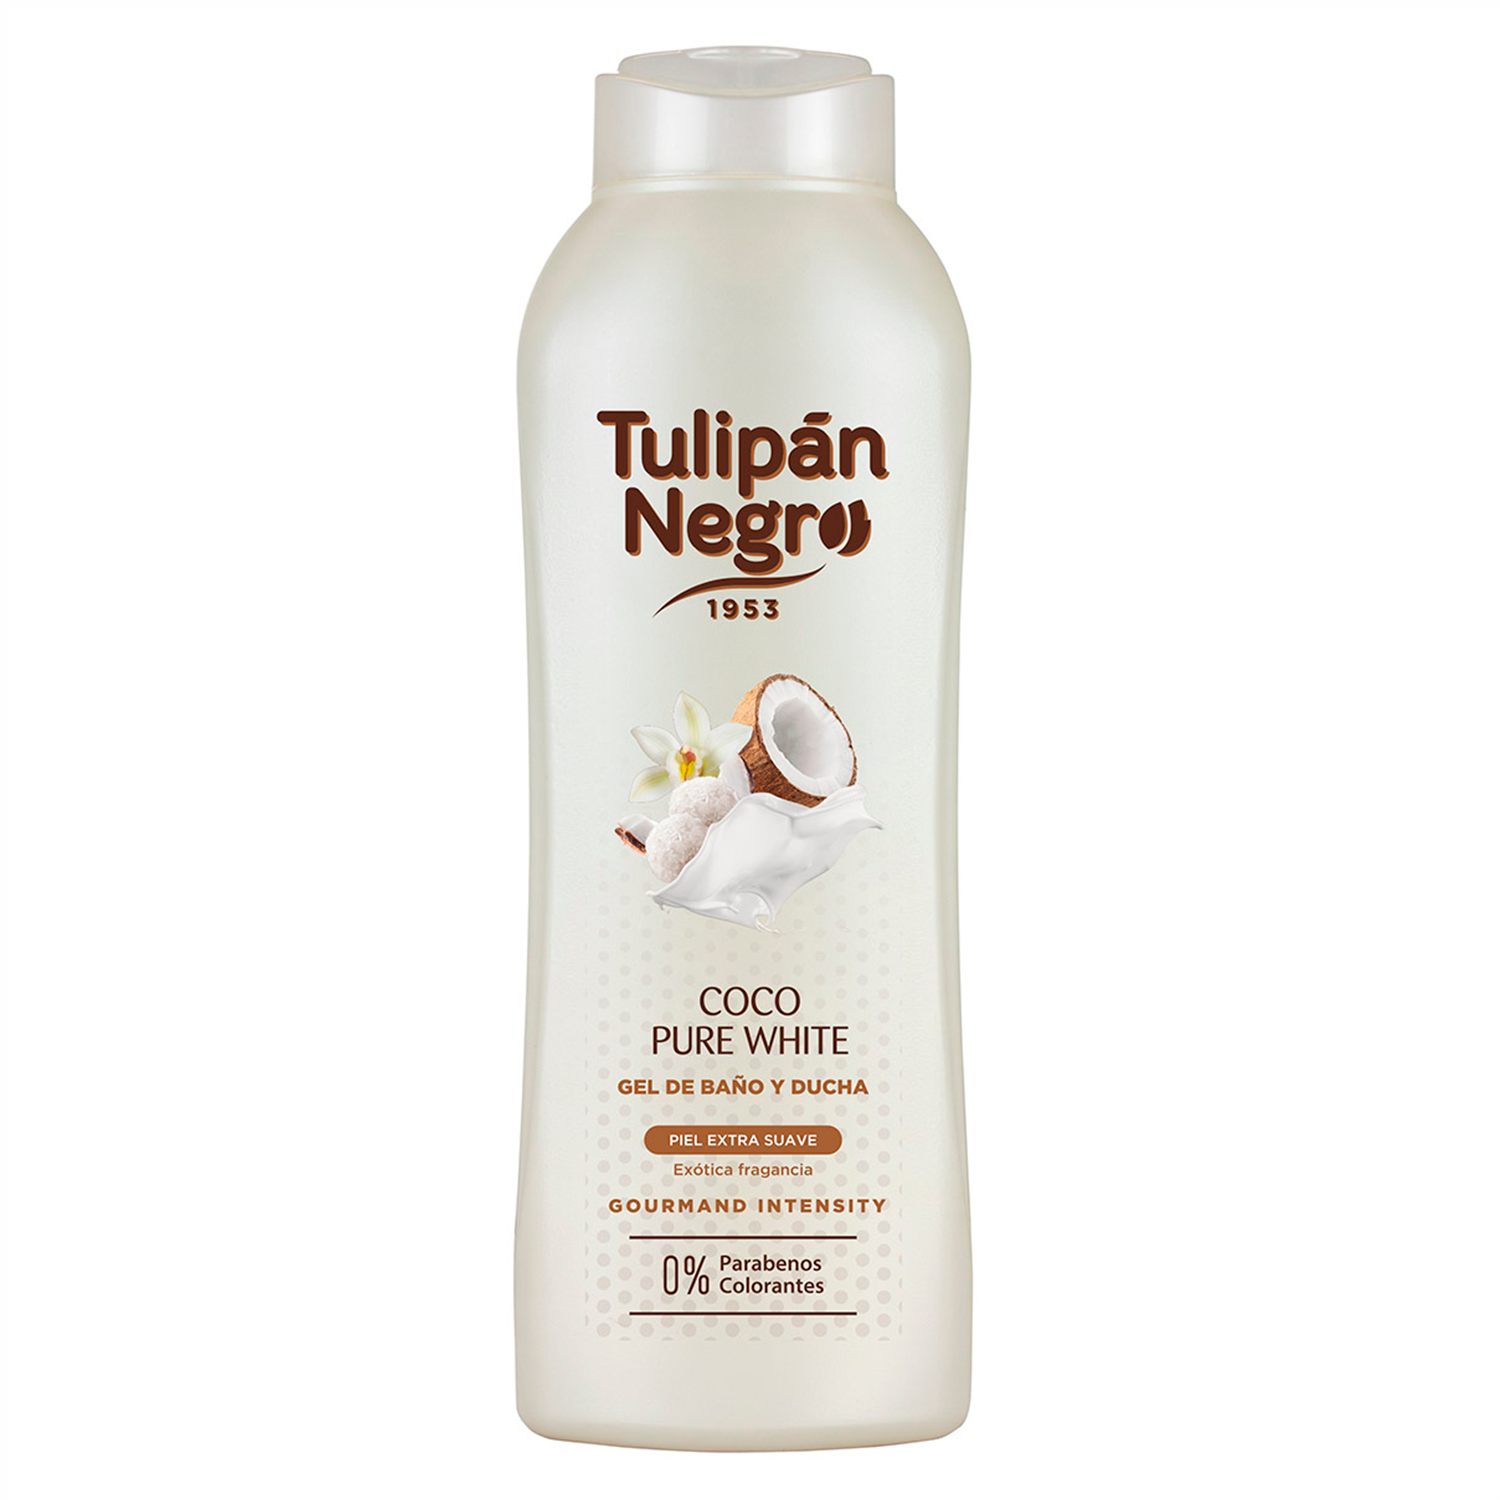 Гель-пена для душа Tulipan Negro без парабенов ваниль и нежный кокос 720 мл - фото 1